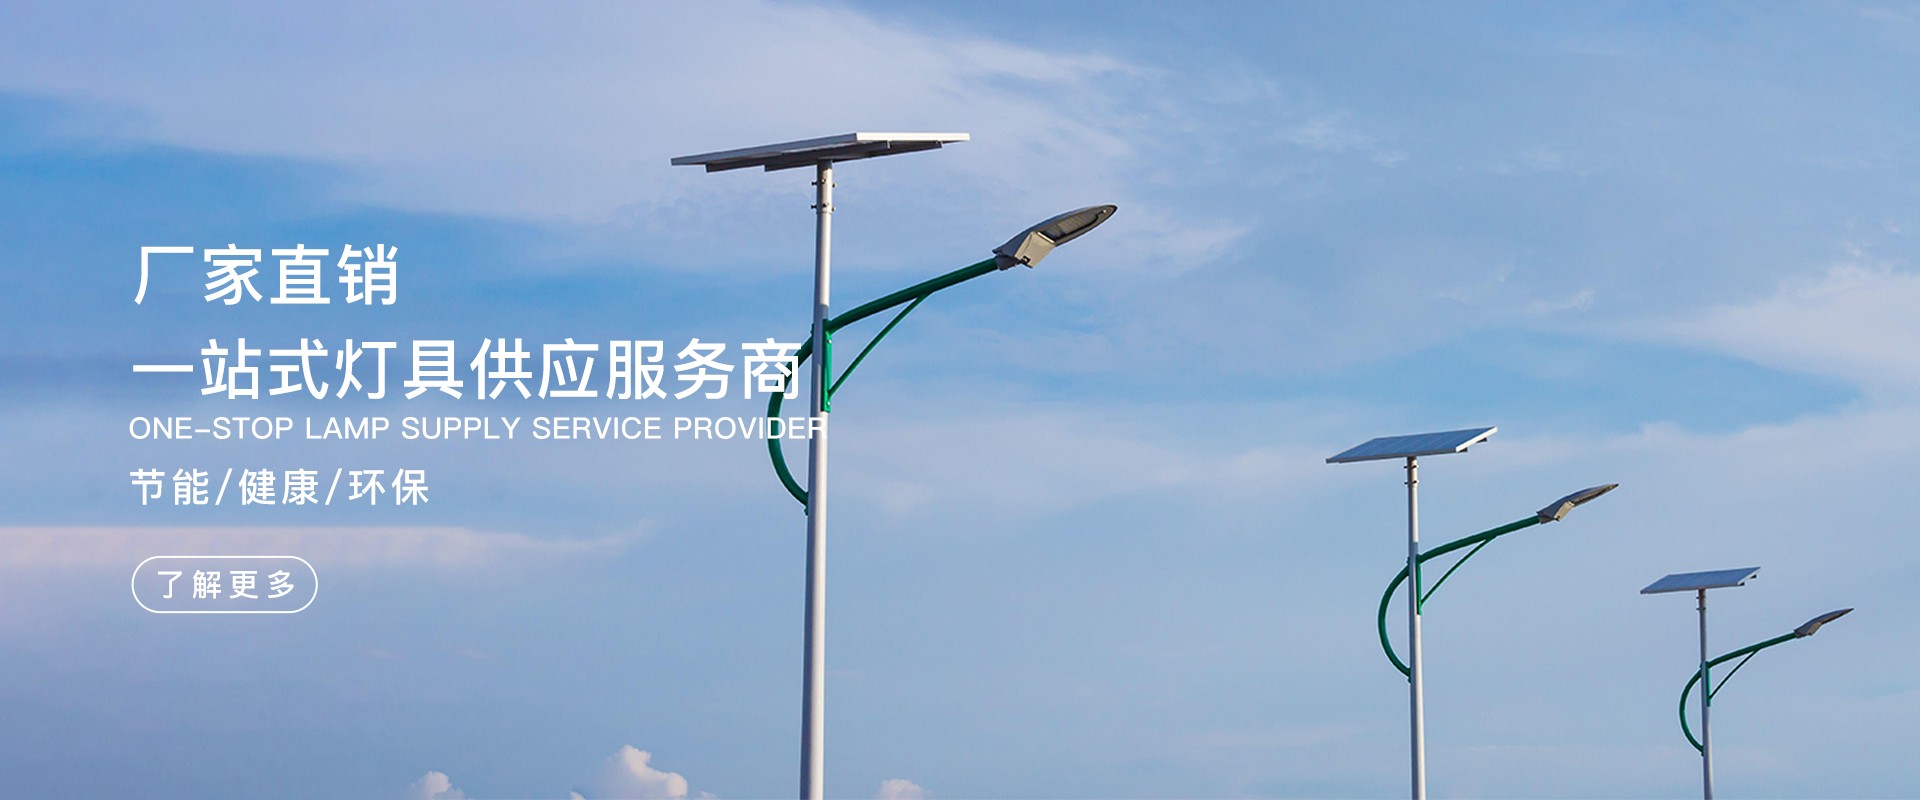 云南南威新能源科技有限公司